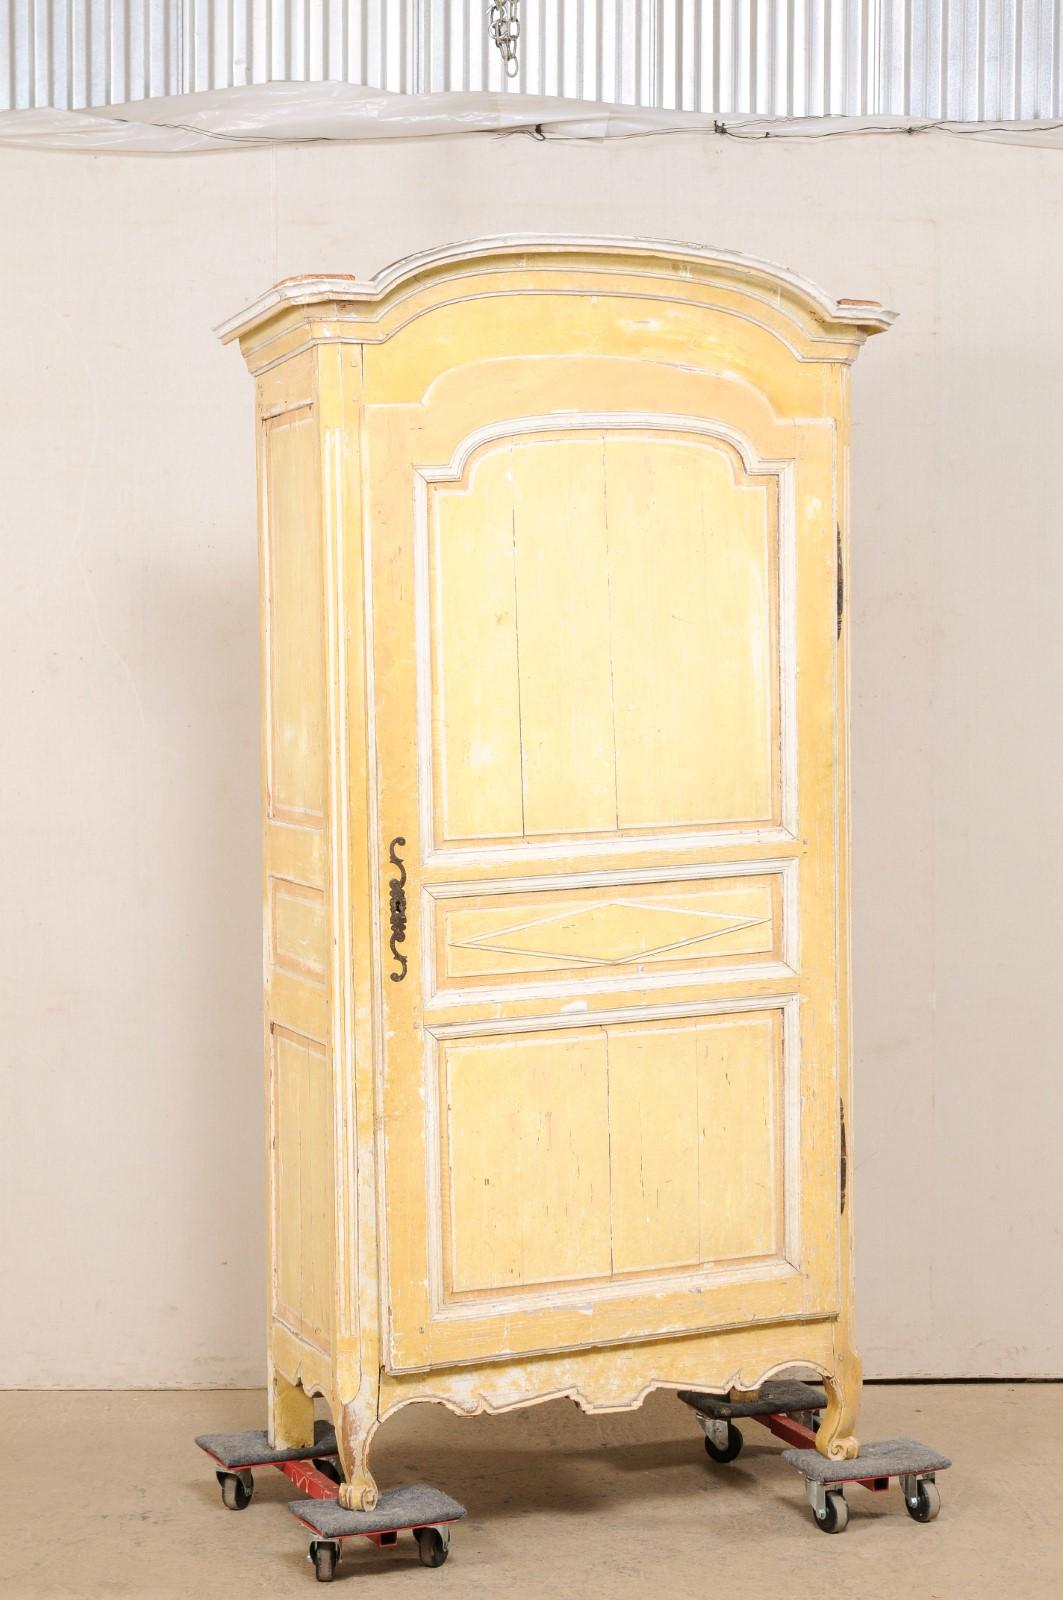 Ein hoher französischer Einzelschrank mit Originalfarbe aus dem 19. Jahrhundert. Dieser antike Schrank aus Frankreich zeichnet sich durch ein wunderschön geformtes und längliches, bogenförmiges Gesims aus, das auf einem hohen Gehäuse ruht, das mit